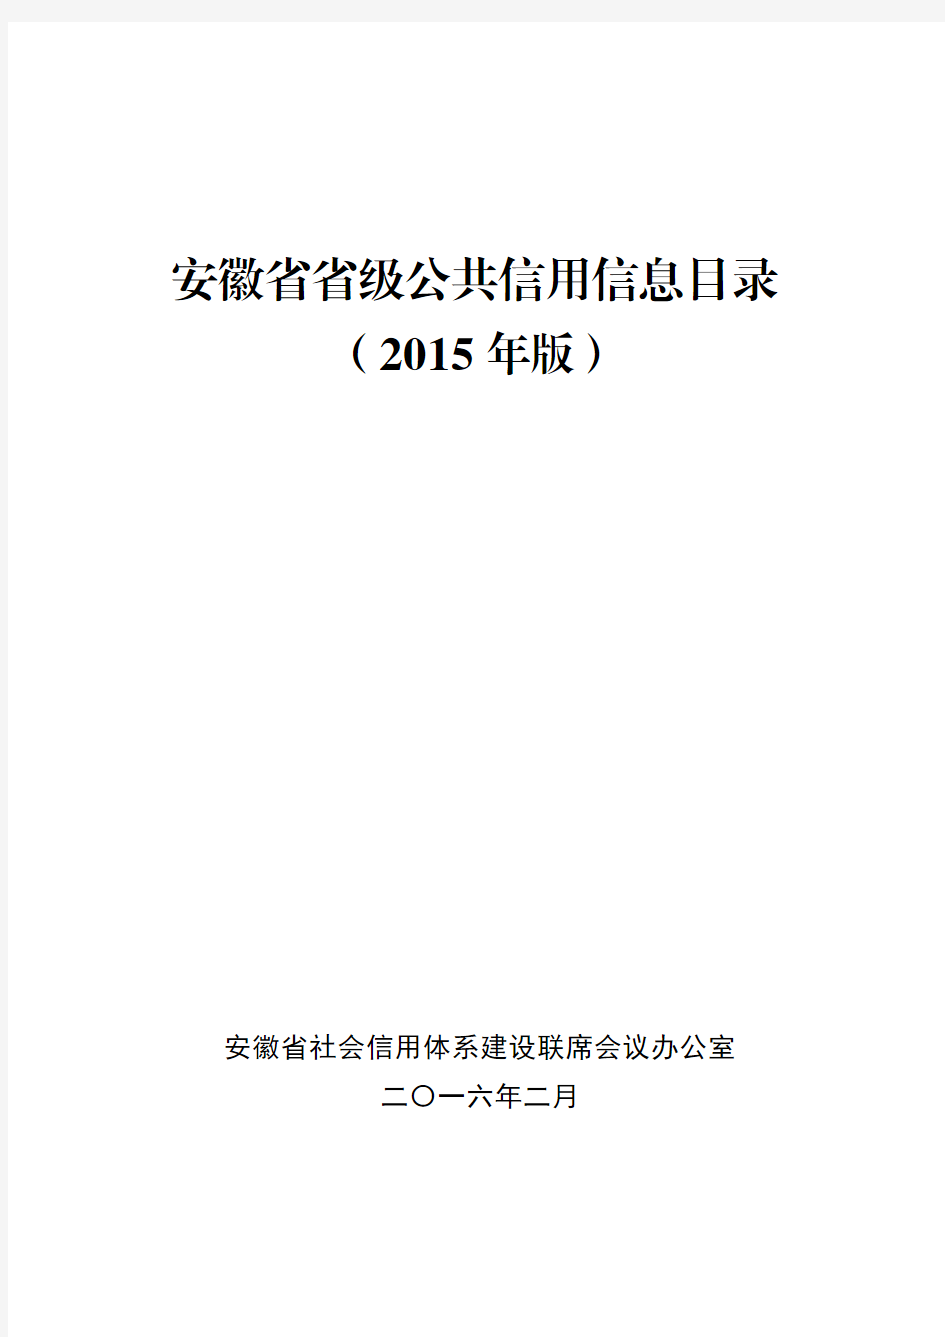 安徽省省级公共信用信息目录(2015年版)